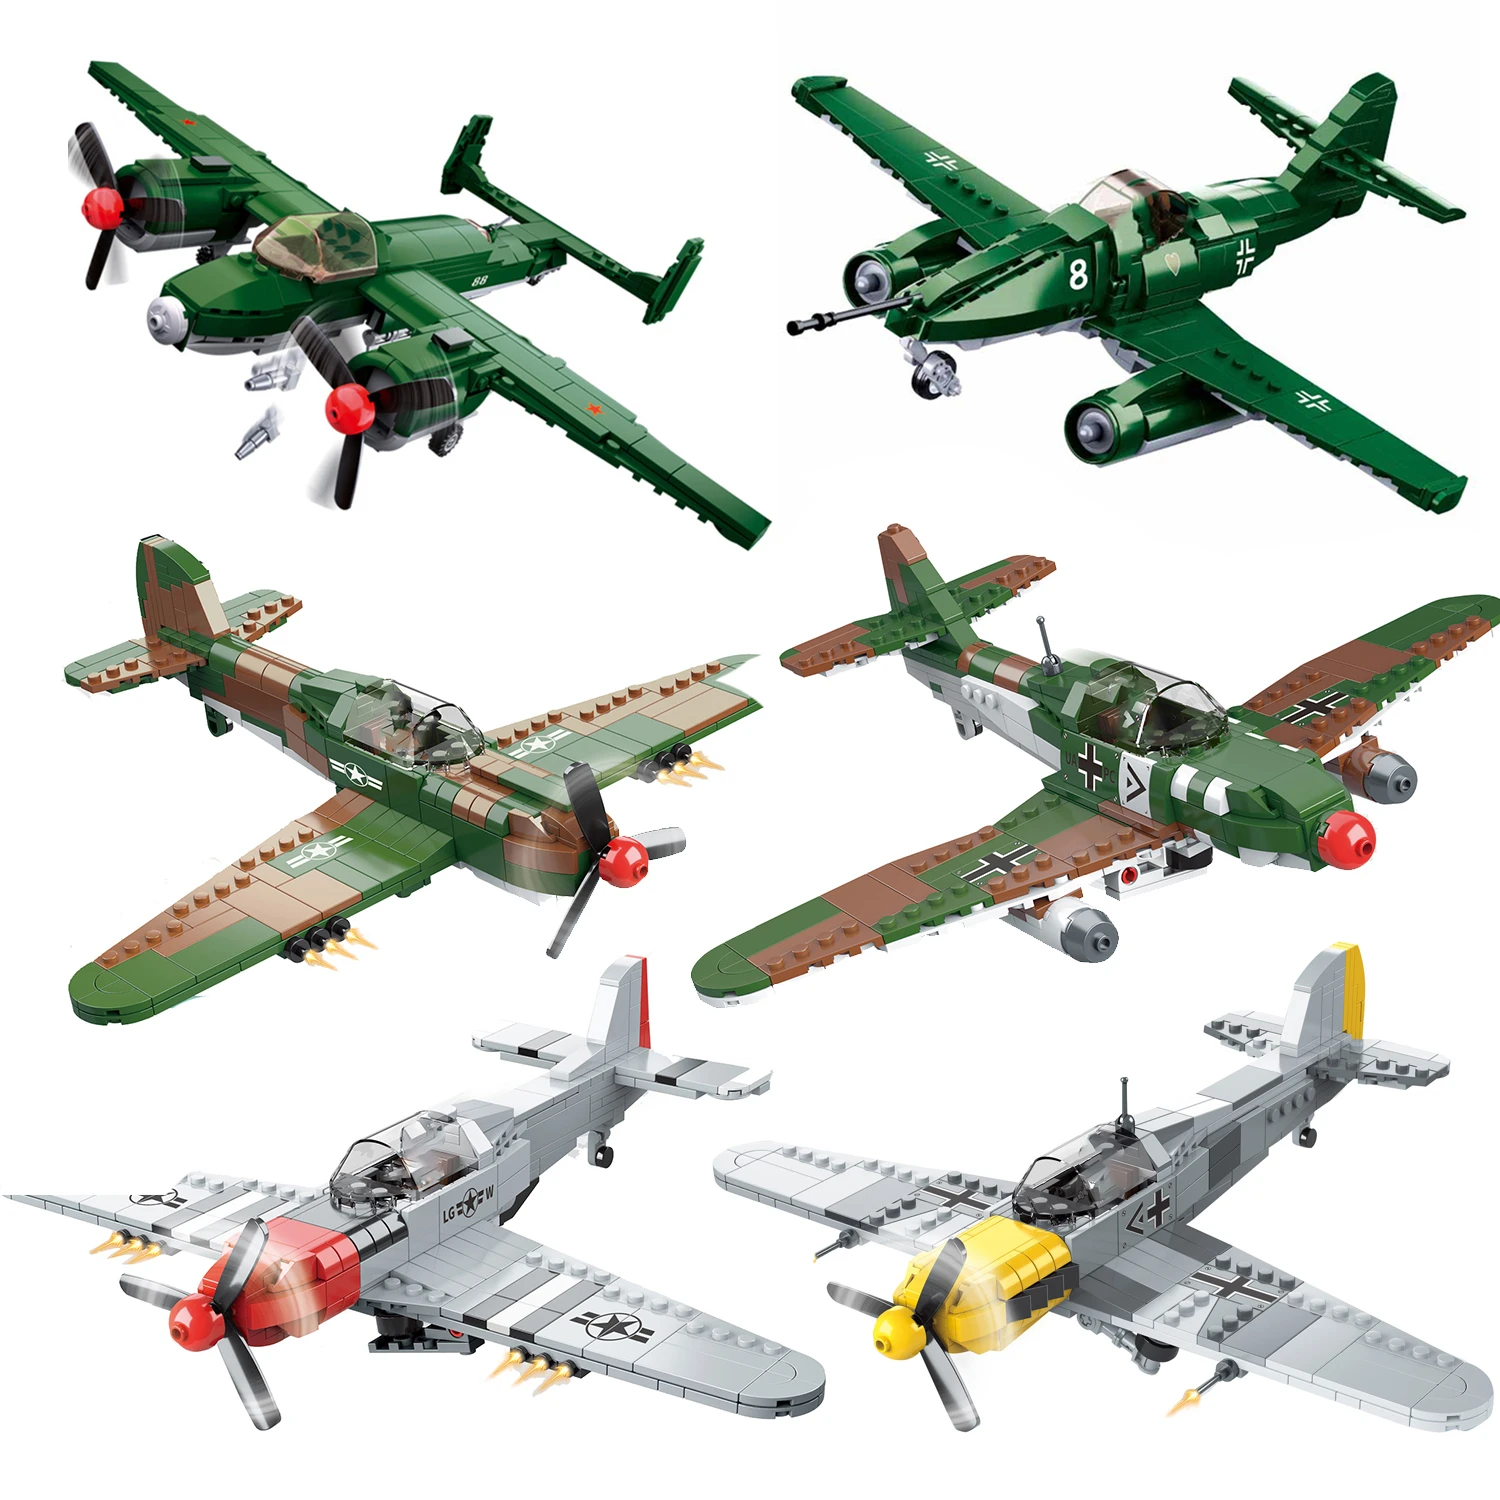 

Самолет времен Второй мировой войны, немецкий советский самолет, строительные блоки, Вторая мировая война, военная броня, наборы DF-109 ME262 P51 P40, боевой самолет